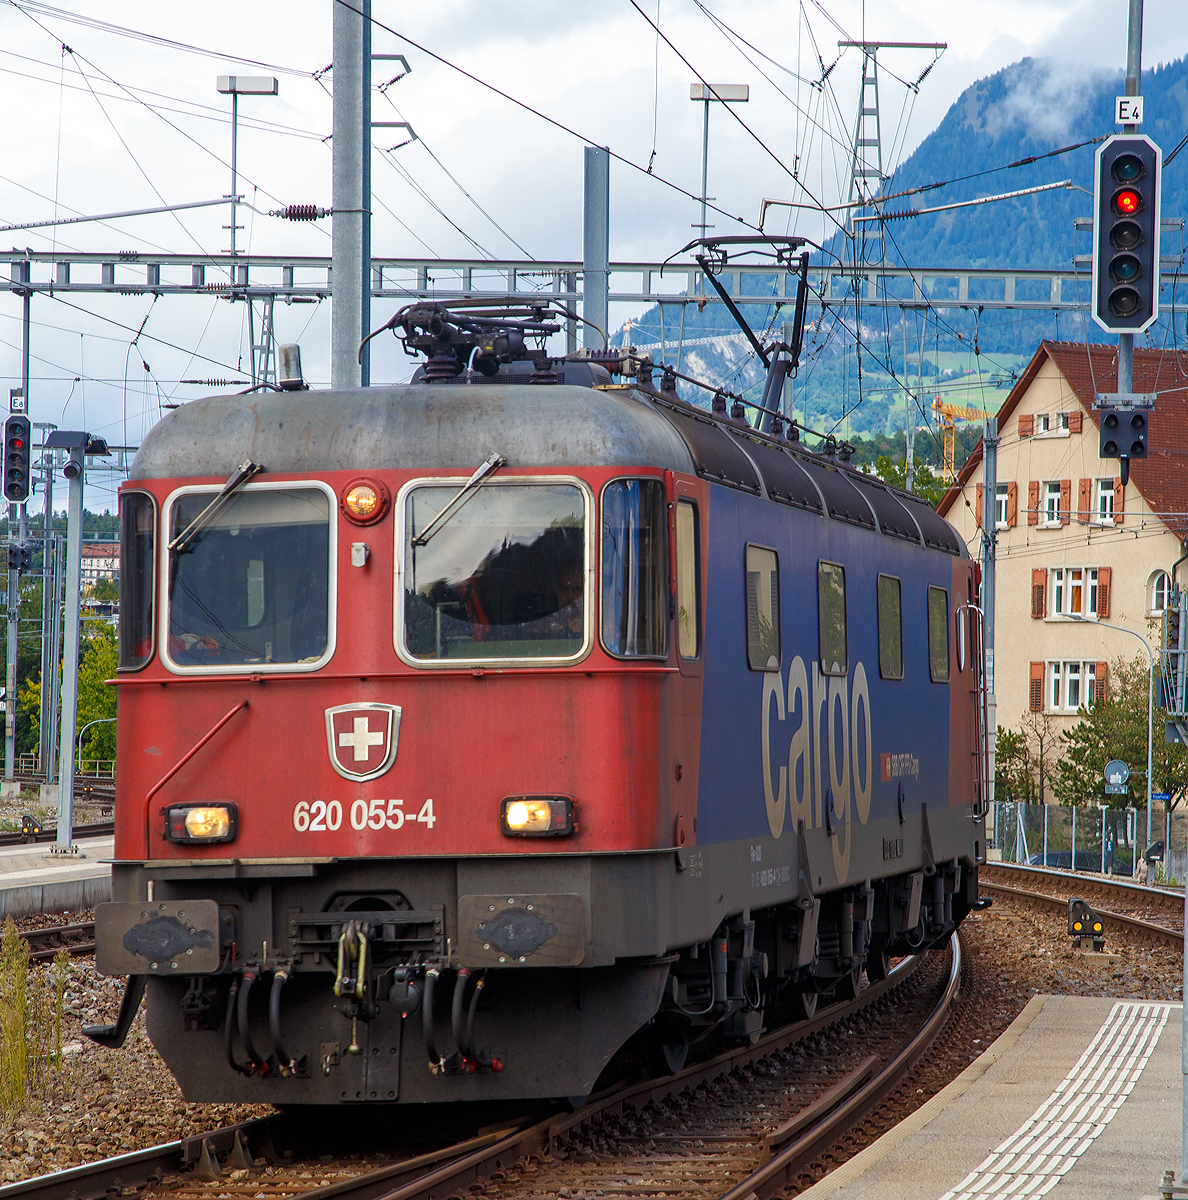 Die SBB Cargo Re 620 055-4  Cossonay  (91 85 4620 044-4 CH-SBBC), ex SBB Re 6/6 11655  Cossonay  erreicht am 12.09.2017 den Bahnhof Chur.

Die Re 6/6, nach neuem Bezeichnungsschema Re 620, sind sechsachsige  (Achsformel Bo’Bo’Bo’), elektrische Lokomotiven der Schweizerischen Bundesbahnen (SBB), die als Ersatz für die Ae 6/6 im schweren Dienst am Gotthard angeschafft wurden.

Aus den Anforderungen an die Baureihe ergab sich für die Traktion die Notwendigkeit von sechs Triebachsen. Um dennoch gute Kurvenlaufeigenschaften mit niedrigem Verschleiß zu erreichen, wurden im Gegensatz zur Ae 6/6 drei zweiachsige Drehgestelle eingebaut, wobei sich das mittlere stark seitlich bewegen kann. Für einen besseren Kurveneinlauf der nachlaufenden zwei Drehgestelle wurden zusätzlich zwischen den drei Drehgestellen elastische Querkupplungen angeordnet.

Das Design ist der Form der Re 4/4II angelehnt, ebenso die Bedienung und die herkömmliche Trafotechnik, welche bei der Re 6/6 zuletzt eingesetzt wurde. Bei der Re 6/6 sind allerdings zwei Transformatoren (Leistungstransformator und Regeltransformator) vorhanden, die sich im Lokomotivkasten zwischen den Drehgestellen befinden.

Die zwar ähnliche Frontpartie weist gegenüber der Re 4/4II/III ein höheres Dach auf. Wie bei den Re 4/4II/III, erhalten auch alle Re 6/6 nach und nach klimatisierte Führerstände.

Die Re 6/6 – ursprünglich den Gotthardlokomotiven zugeordnet – verfügen über Vielfachsteuerung zusammen mit Re 4/4II, Re 4/4III, Re 4/4IV und RBe 4/4. Im Personenverkehr zogen sie schwere Reisezüge über den Gotthard (als Alternative zu einer Doppeltraktion zweier Re 4/4II). Im Güterverkehr werden sie landesweit für schwere Güterzüge eingesetzt, sehr oft auch in Vielfachsteuerung mit einer Re 4/4II oder Re 4/4III. Ein solches Tandem, oft auch kurz als  Re 10/10  bezeichnet (aufgrund der 10 angetriebenen Achsen), ist in der Lage, die erhöhte Zughakenlast von 1.400 Tonnen über die 26 Promille Steigung der Gotthardstrecke zu befördern. 

TECHNISCHE DATEN (Serie):
Gebaute Stückzahl:  4 Prototypen und 85 Serienmaschinen
Hersteller:  SLM, BBC, SAAS
Baujahre:  1972 (Prototypen), 1975–1980 (Serie)
Spurweite:  1.435 mm (Normalspur)
Achsfolge:  Bo'Bo'Bo'
Länge über Puffer: 19.310 mm
Drehzapfenabstände: 5.700 / 5.700 mm
Achsabstand in den Drehgestellen: 2.900 mm
Treibraddurchmesser:  1.260 mm (neu)
Höhe: 3.932 mm
Breite: 2.950 mm
Dienstgewicht: 120 t
Anzahl der Fahrmotoren: 6
Stundenleistung an der Welle: 6 x 1.338 kW = 8.028 kW
Stundenleistung am Rad: 7.802 KW
Dauerleistung am Rad: 7.244 kW
Höchstgeschwindigkeit: 140 km/h
Getriebeübersetzung: 1: 2,636
Anfahrzugkraft: 395 kN
Stundenzugkraft: 267 kN
Dauerzugkraft: 235 kN
Elektrische Bremse: Nutzstrom
Stromsystem: 15 kV, 16,7 Hz ~
